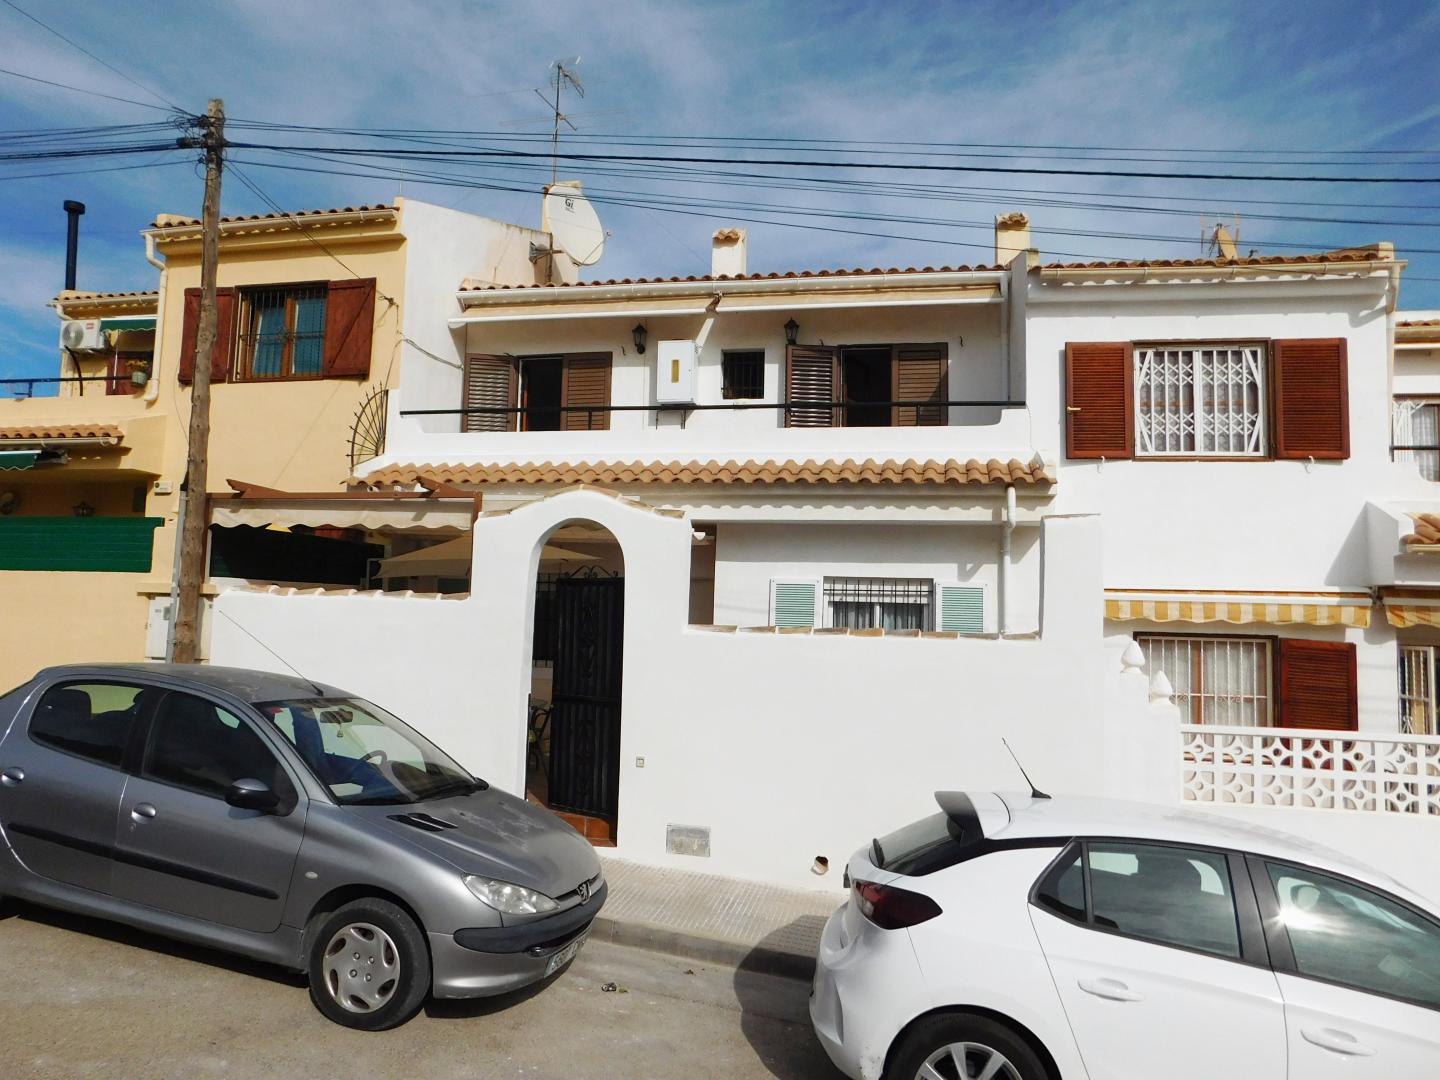 For sale: 3 bedroom house / villa in San Miguel de Salinas, Costa Blanca